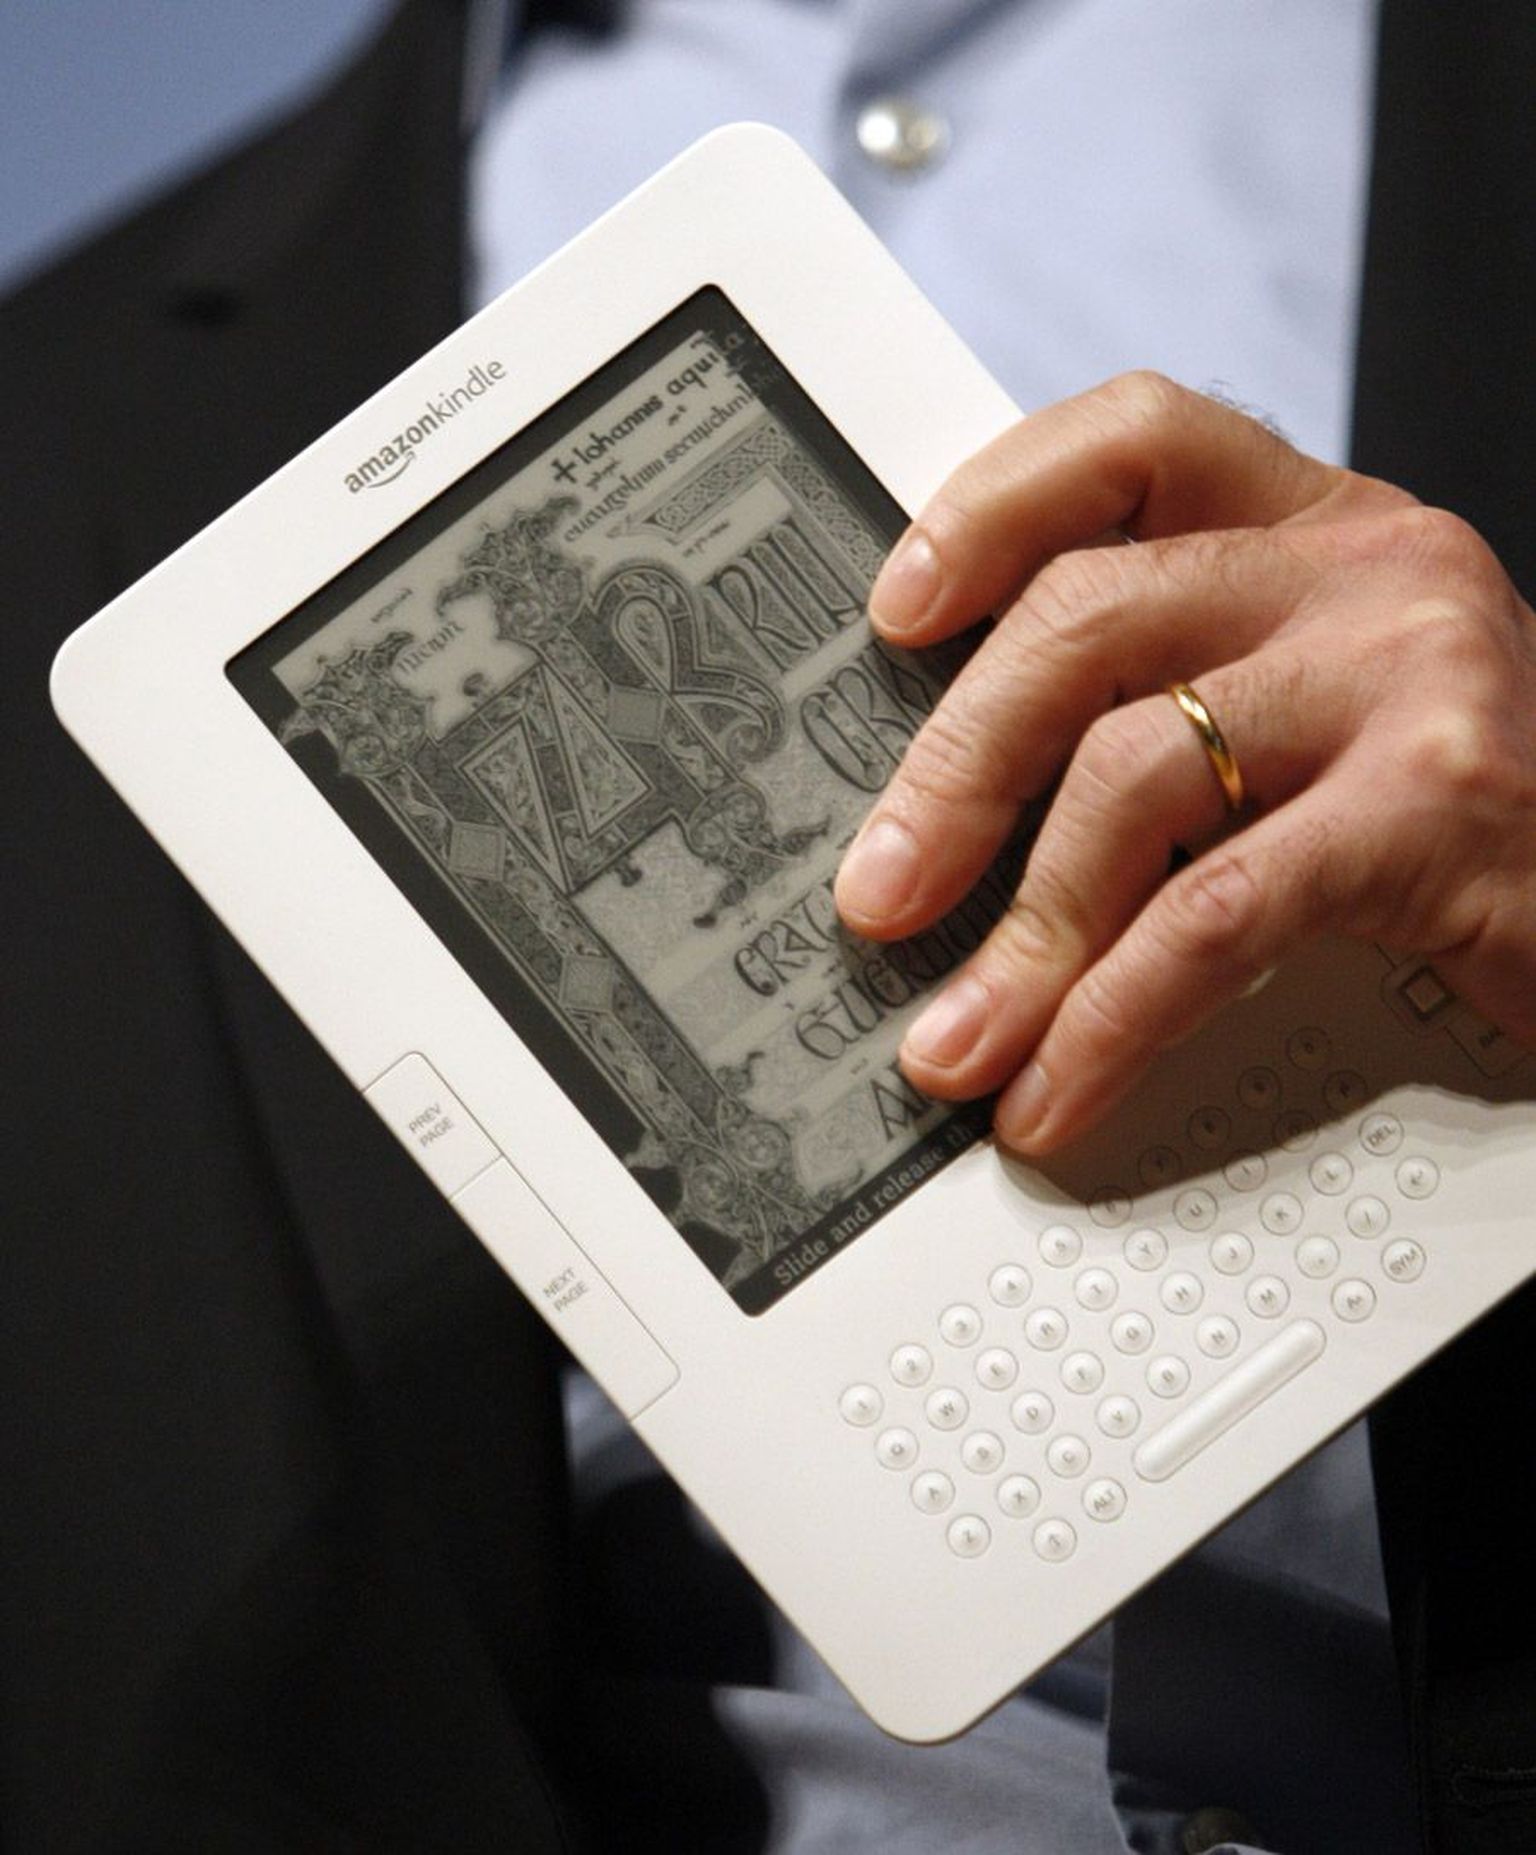 Teise põlvkonna e-luger Kindle töötab klahvide abil, uus tahvelarvuti on eeldatavasti juba puutetundliku ekraaniga.